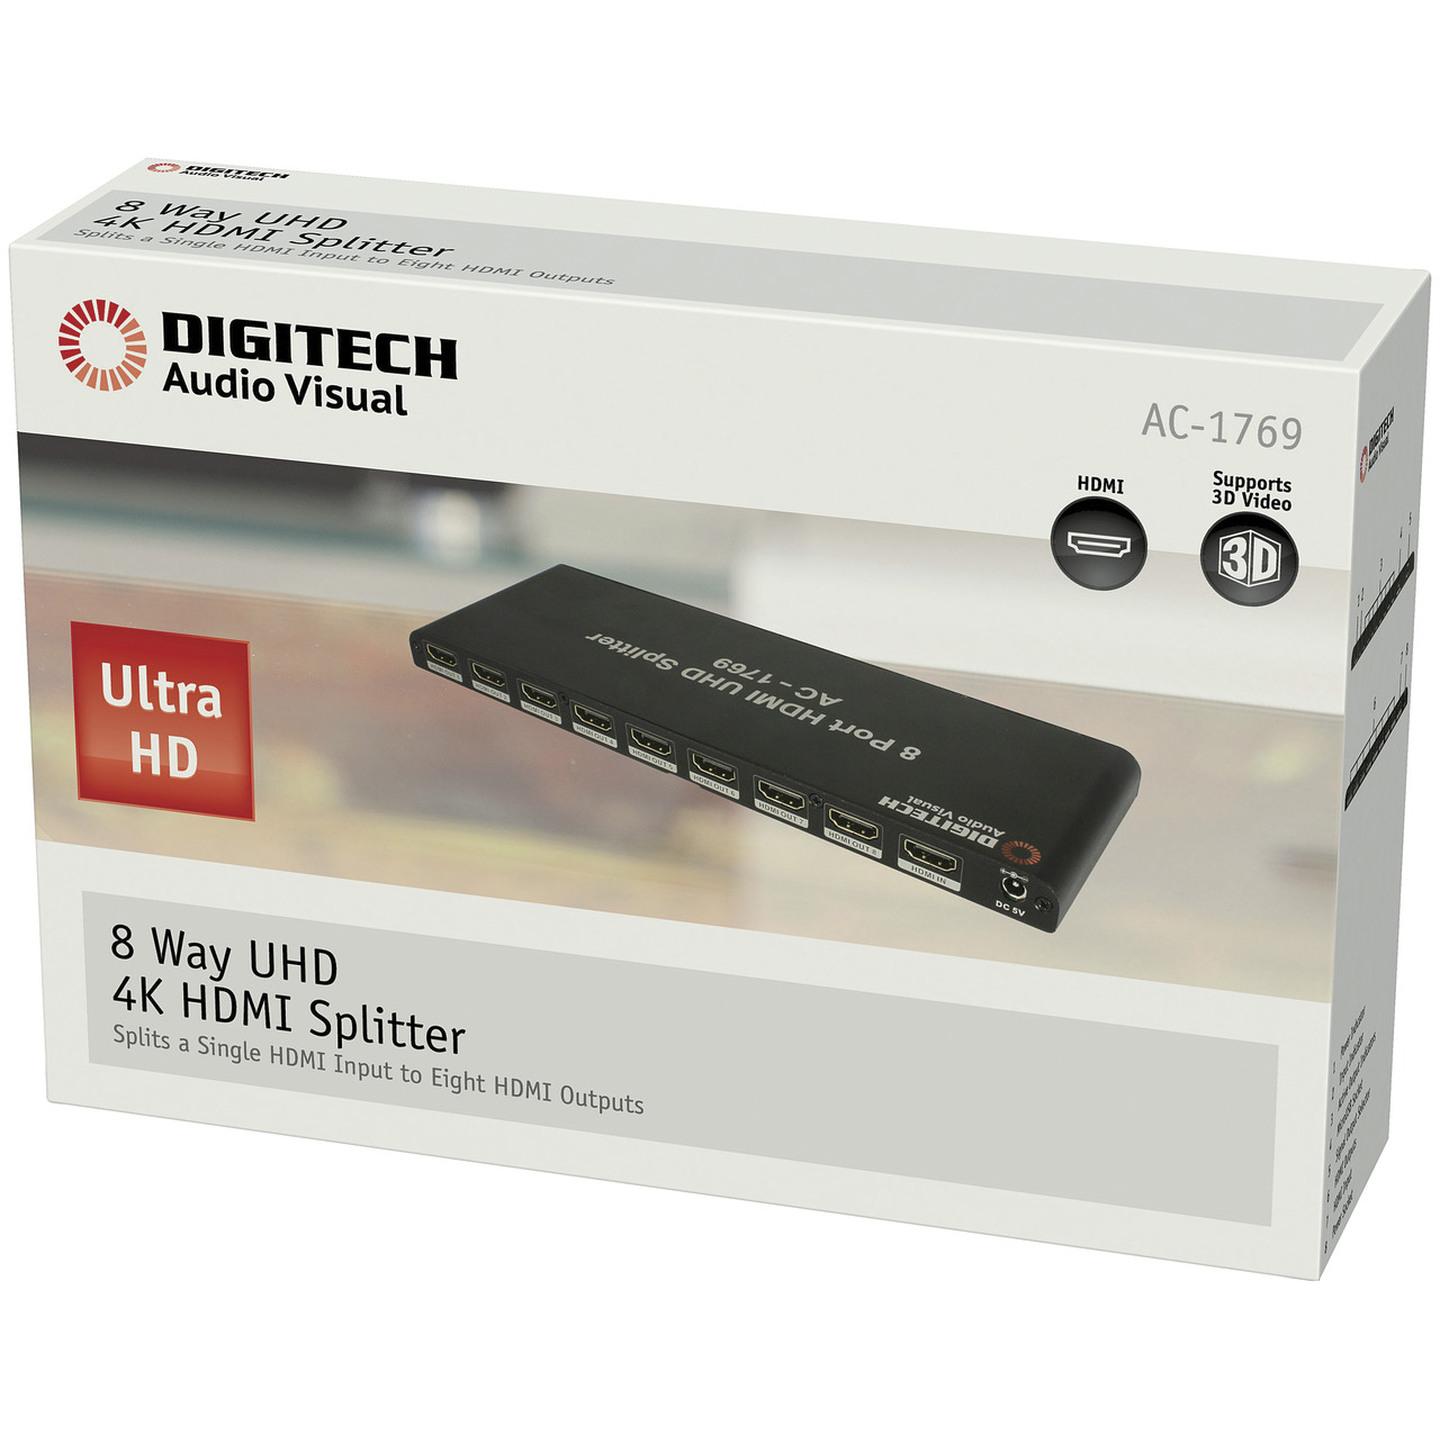 8 Way UHD 4K HDMI Splitter